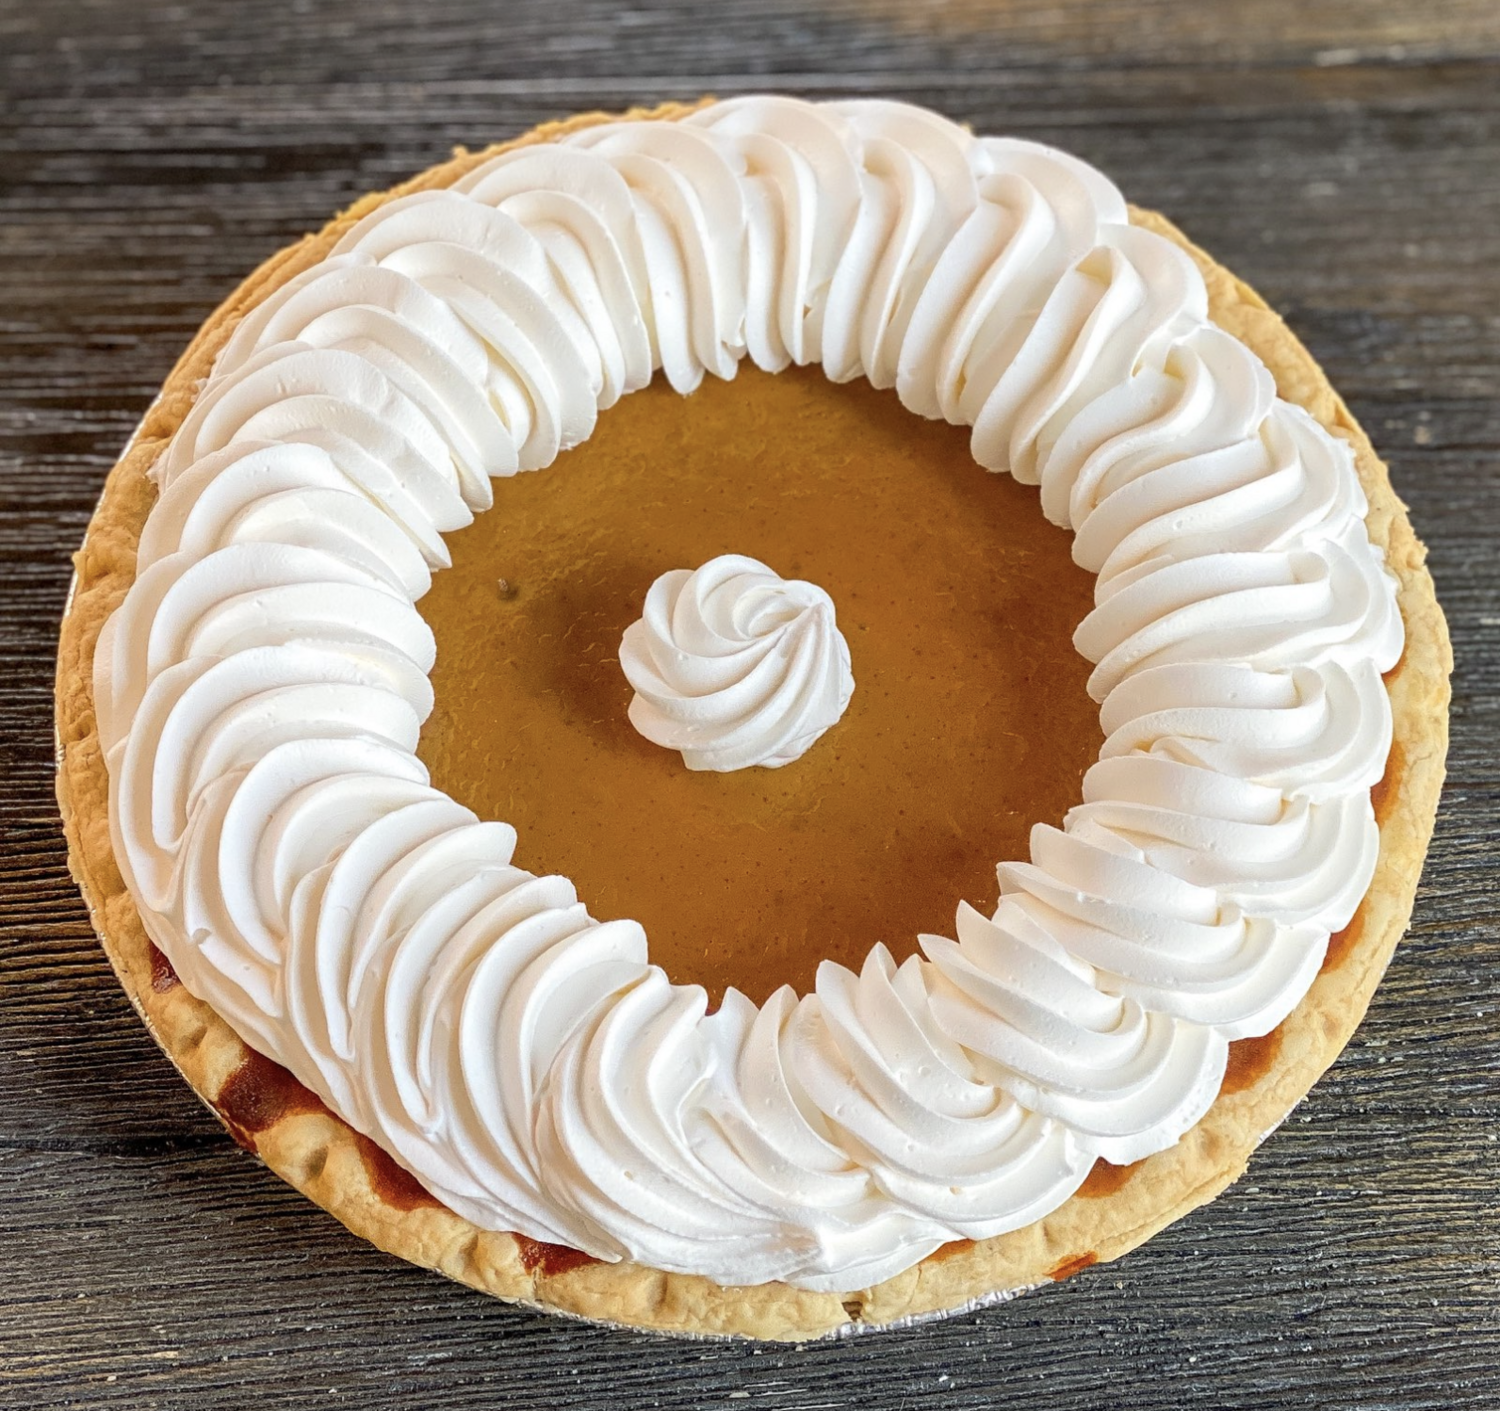 Old Fashioned Pumpkin Pie (9-inch)